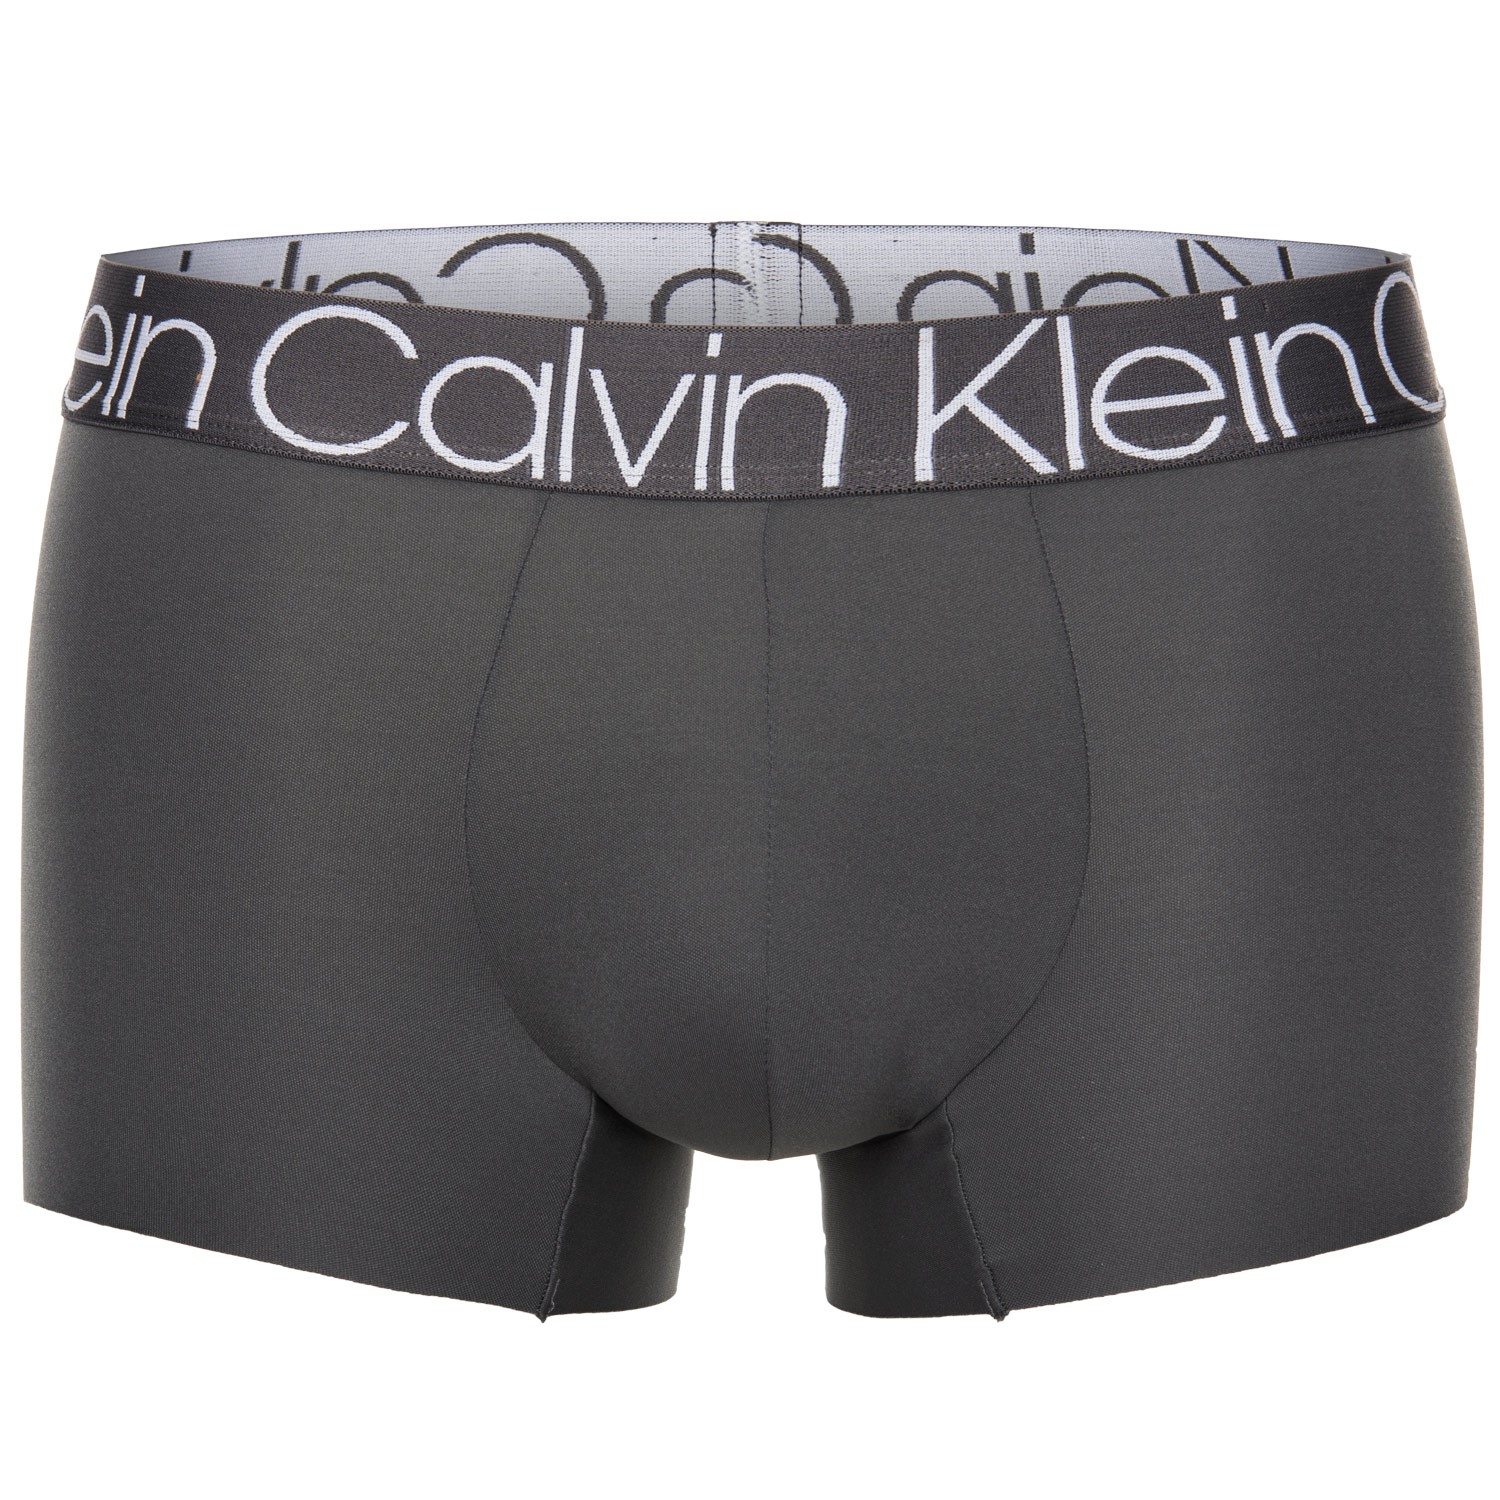 Calvin Klein Compact Flex Microfiber Trunk - Boxer - Trunks